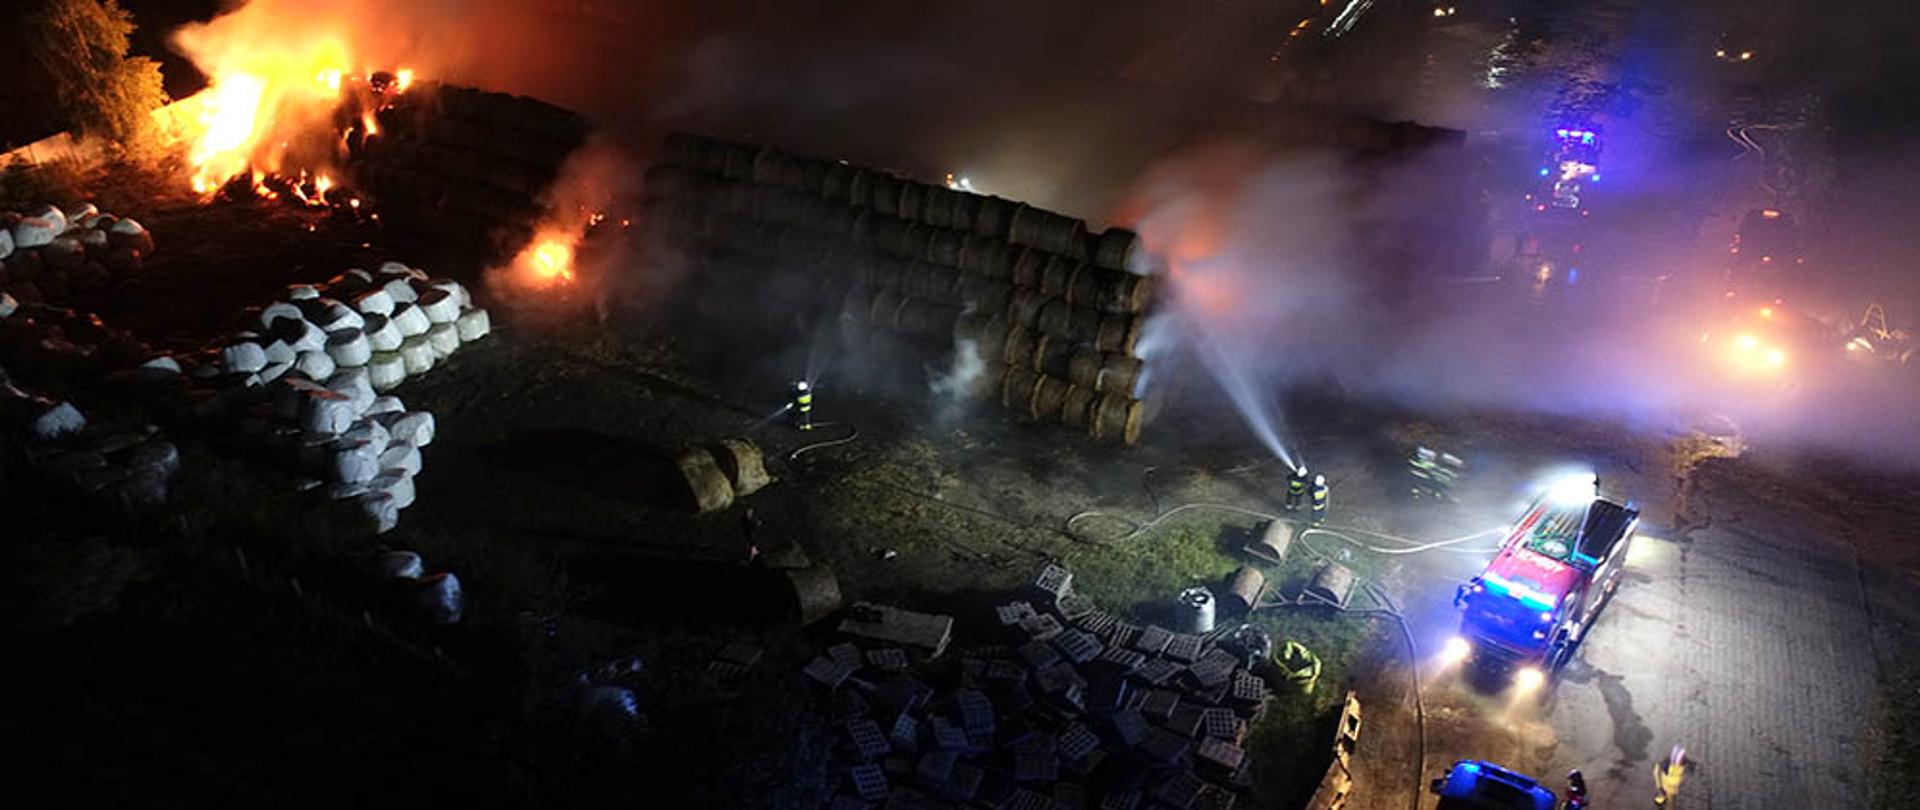 Zdjęcie przedstawia pożar stogów siana oraz prace strażaków z lotu ptaka.